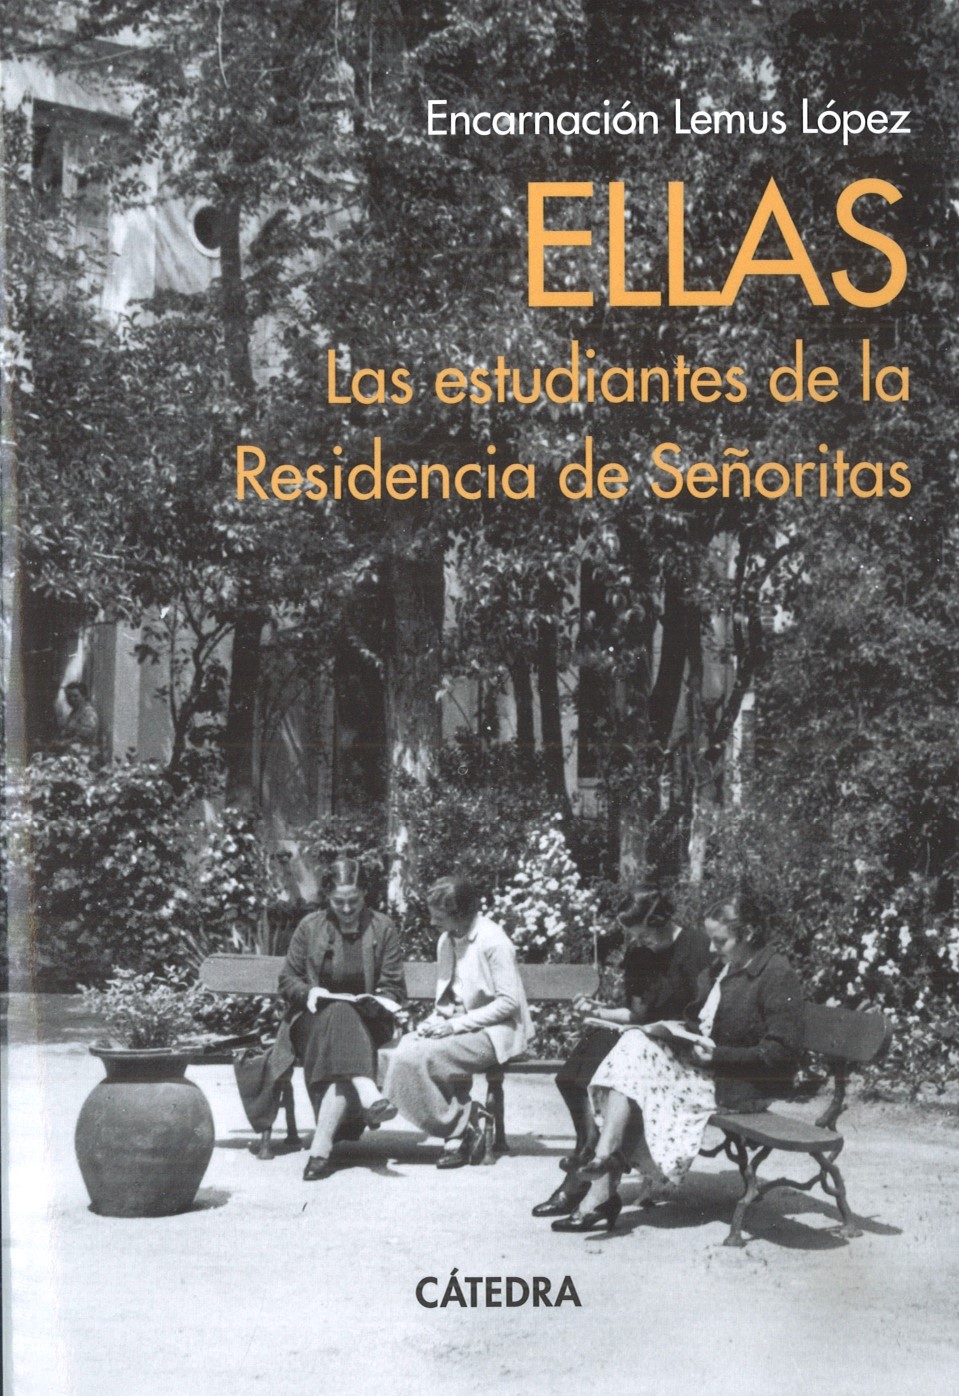 Imagen de portada del libro Ellas